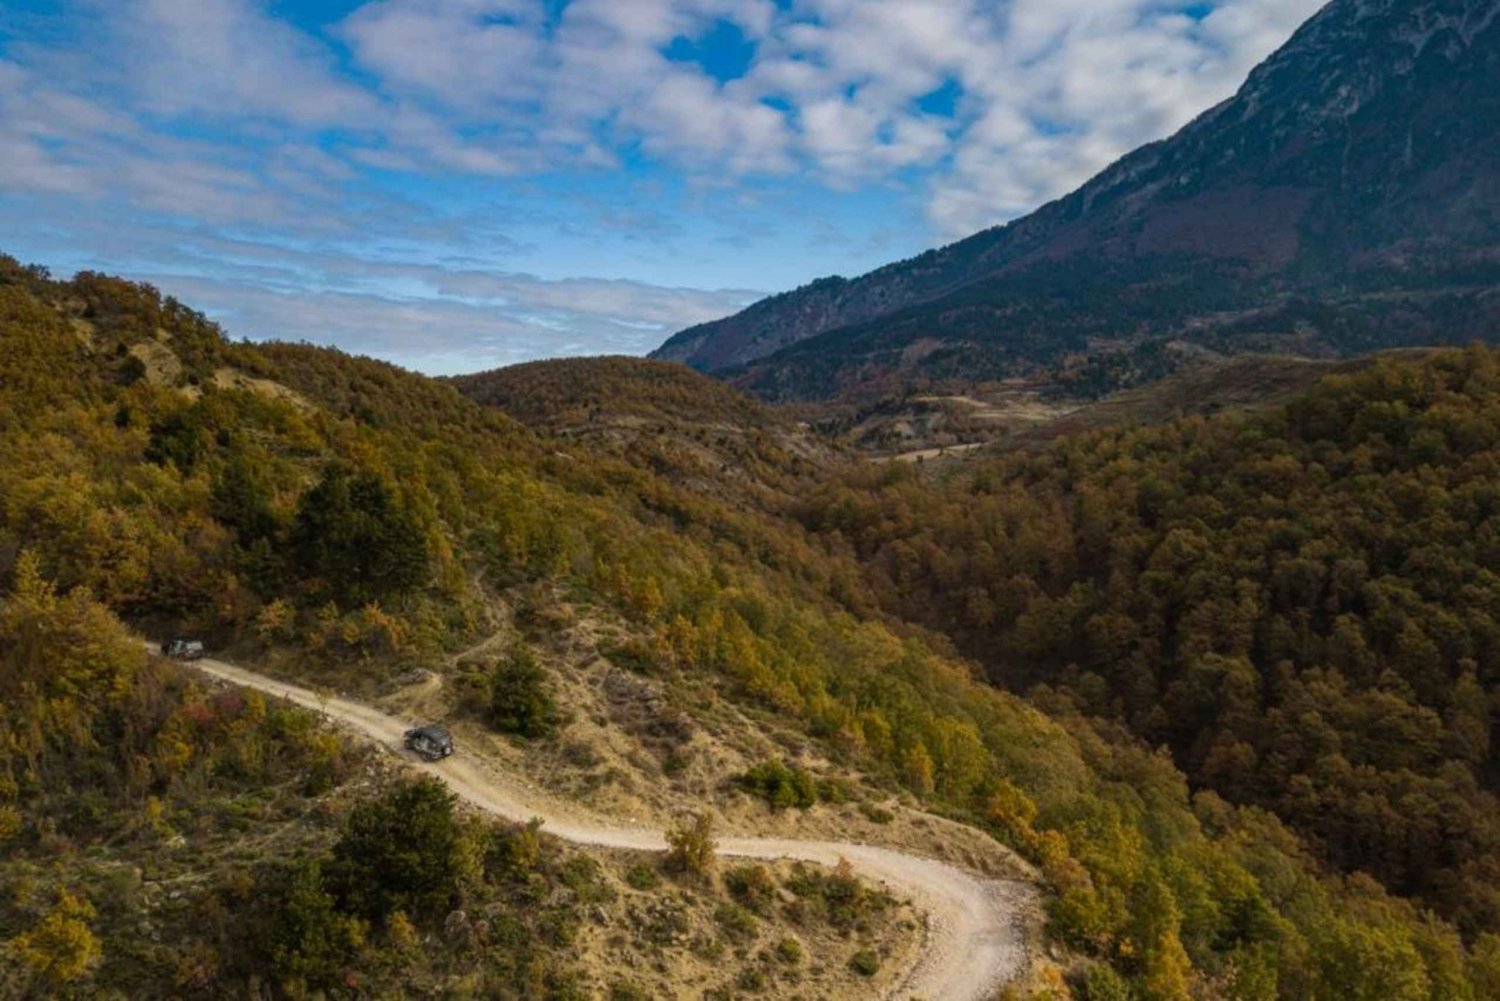 Albania: Berat Mules Caravan & Off Road in the Mount Tomor